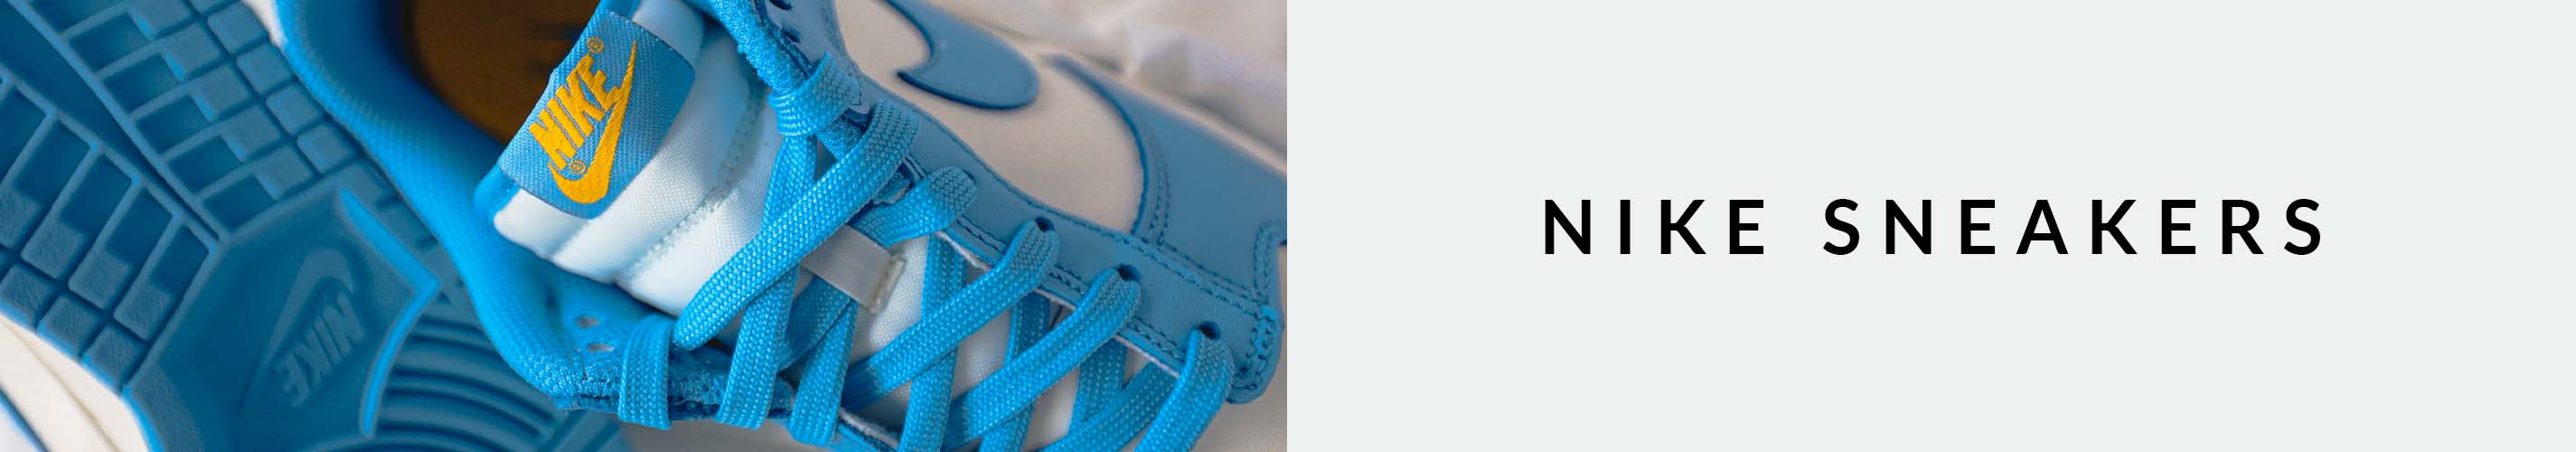 blau weisser Nike sneaker